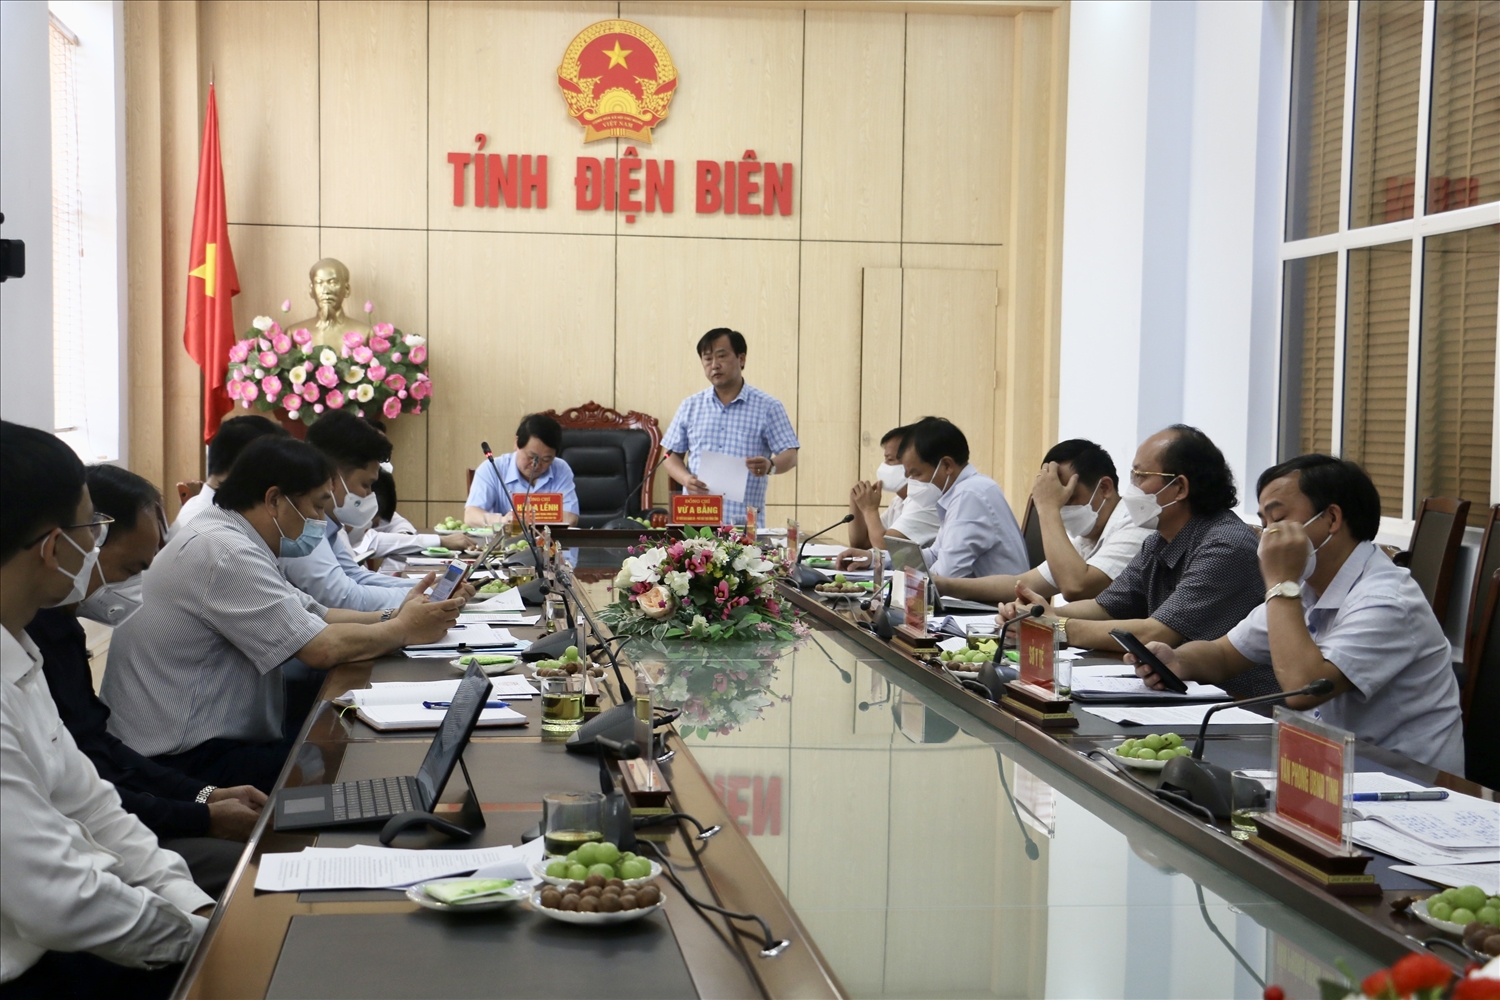 Ông Vừ A Bằng, Phó Chủ tịch UBND tỉnh Điện Biên phát biết tại buổi làm việc